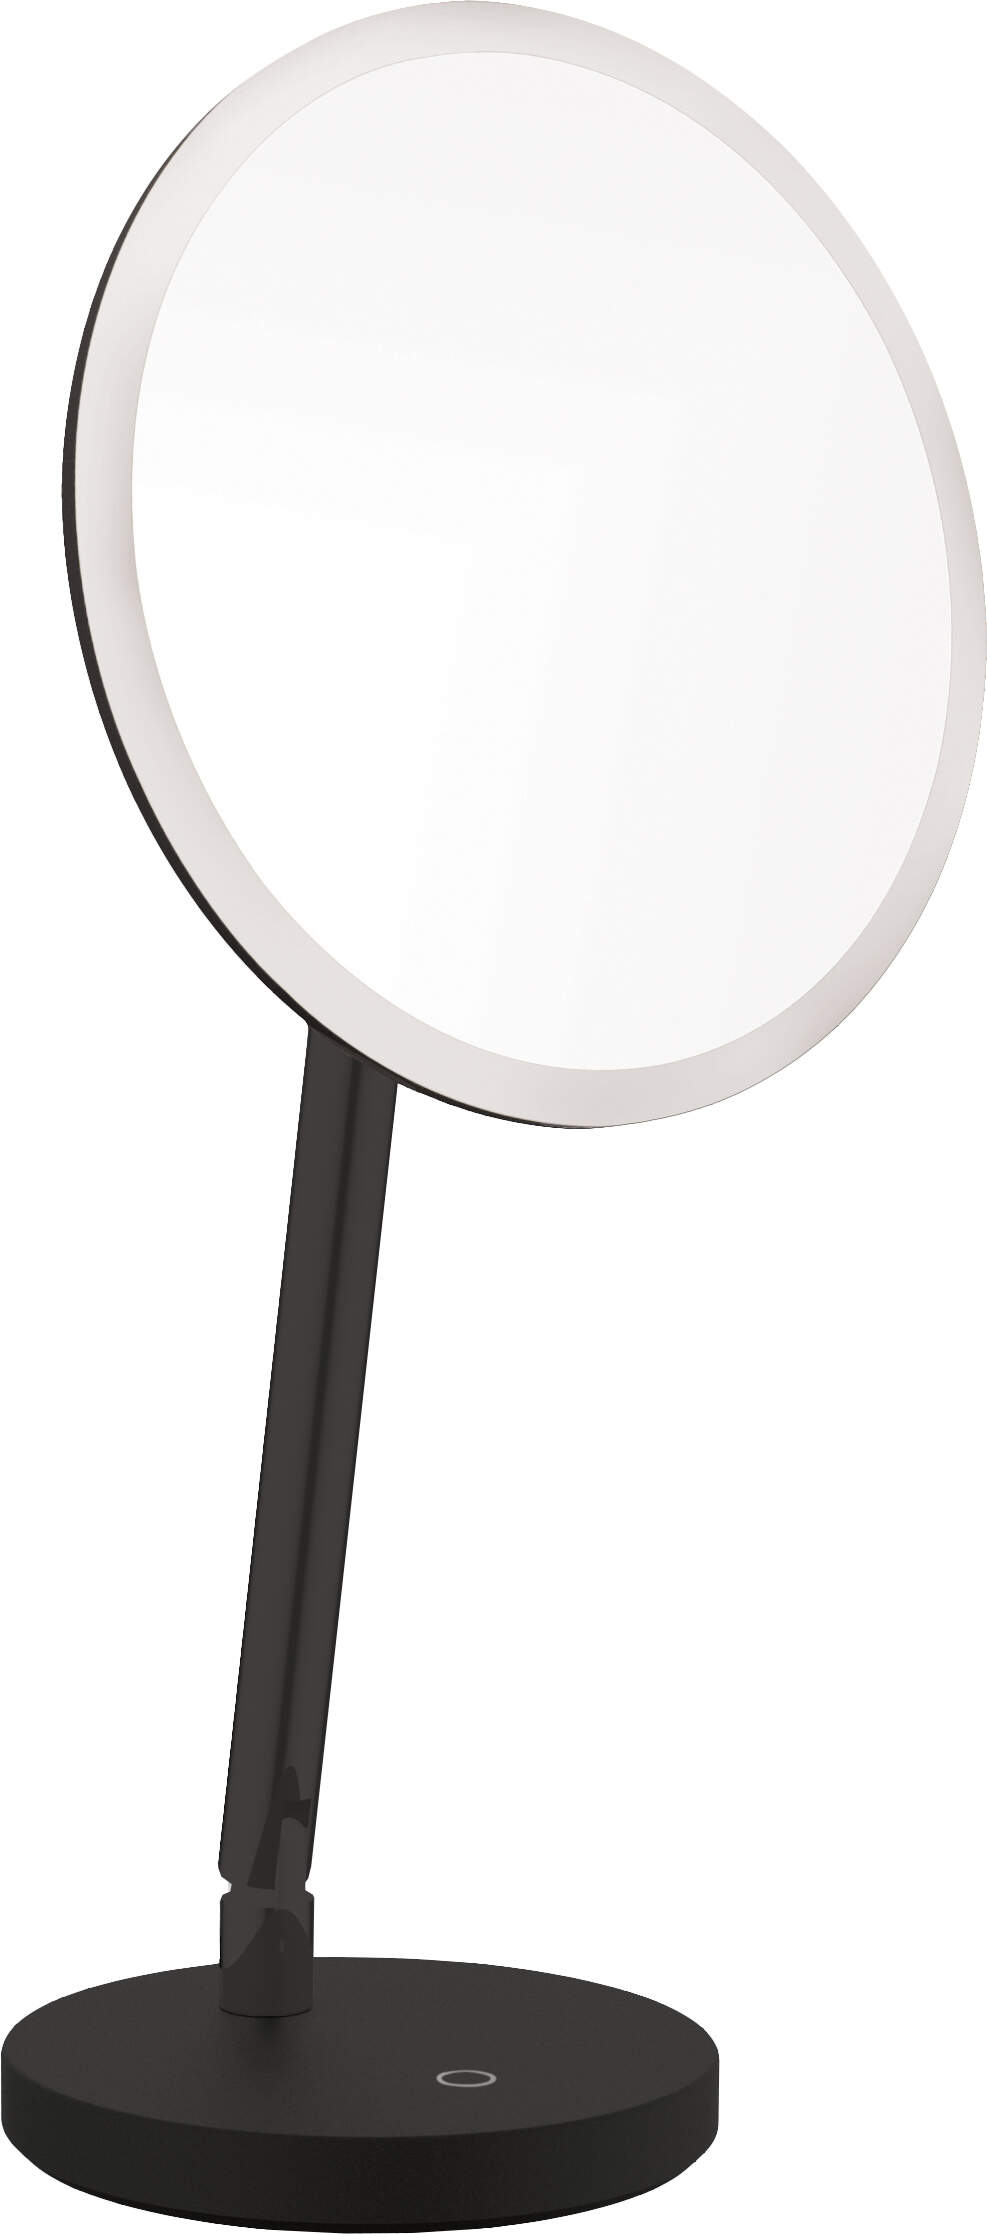 Kozmetické zrkadlo Silia, stojace - LED svetlo